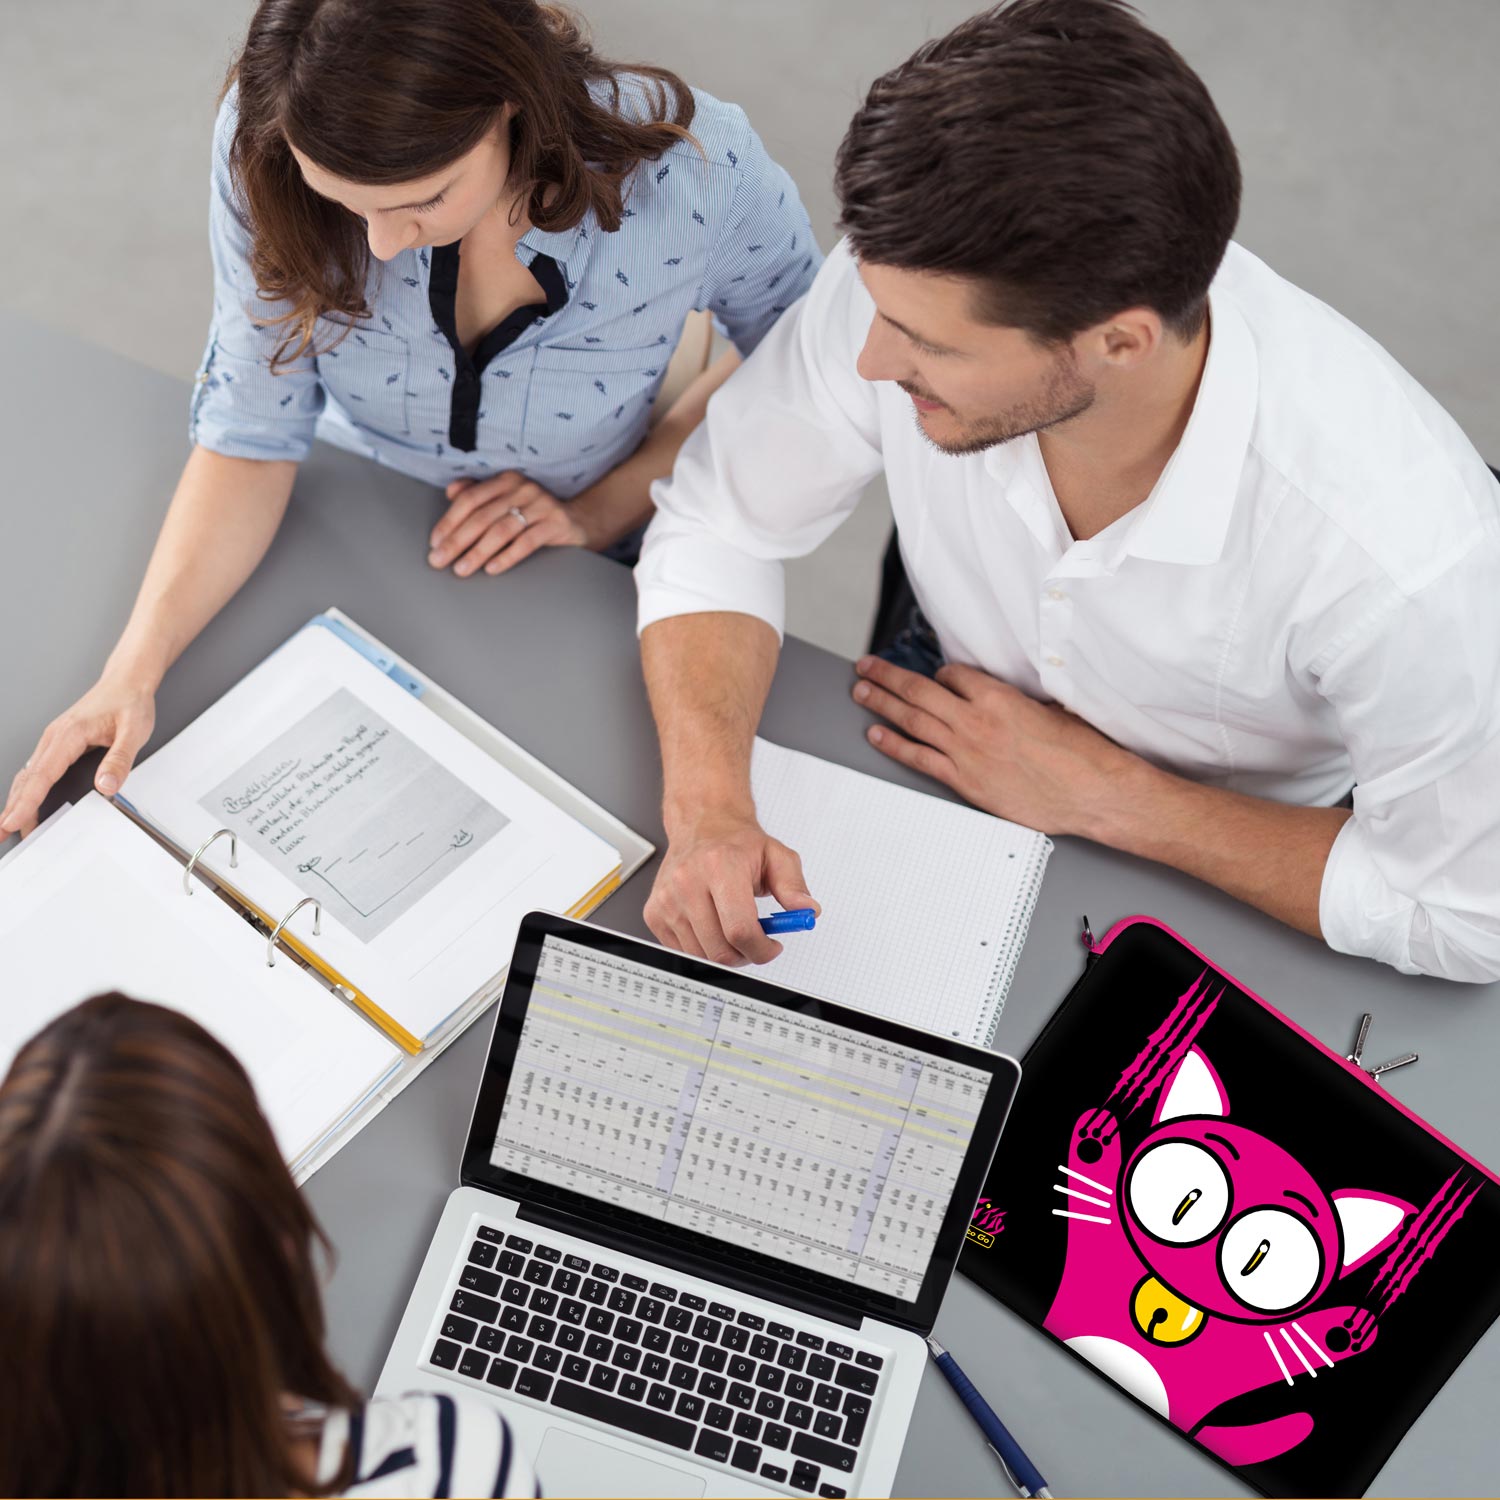 LS140 Kitty to Go Designer Laptop Schutzhülle in schwarz-pink als Business-Zubehör im Büro, bei Kunden und auf Dienstreisen